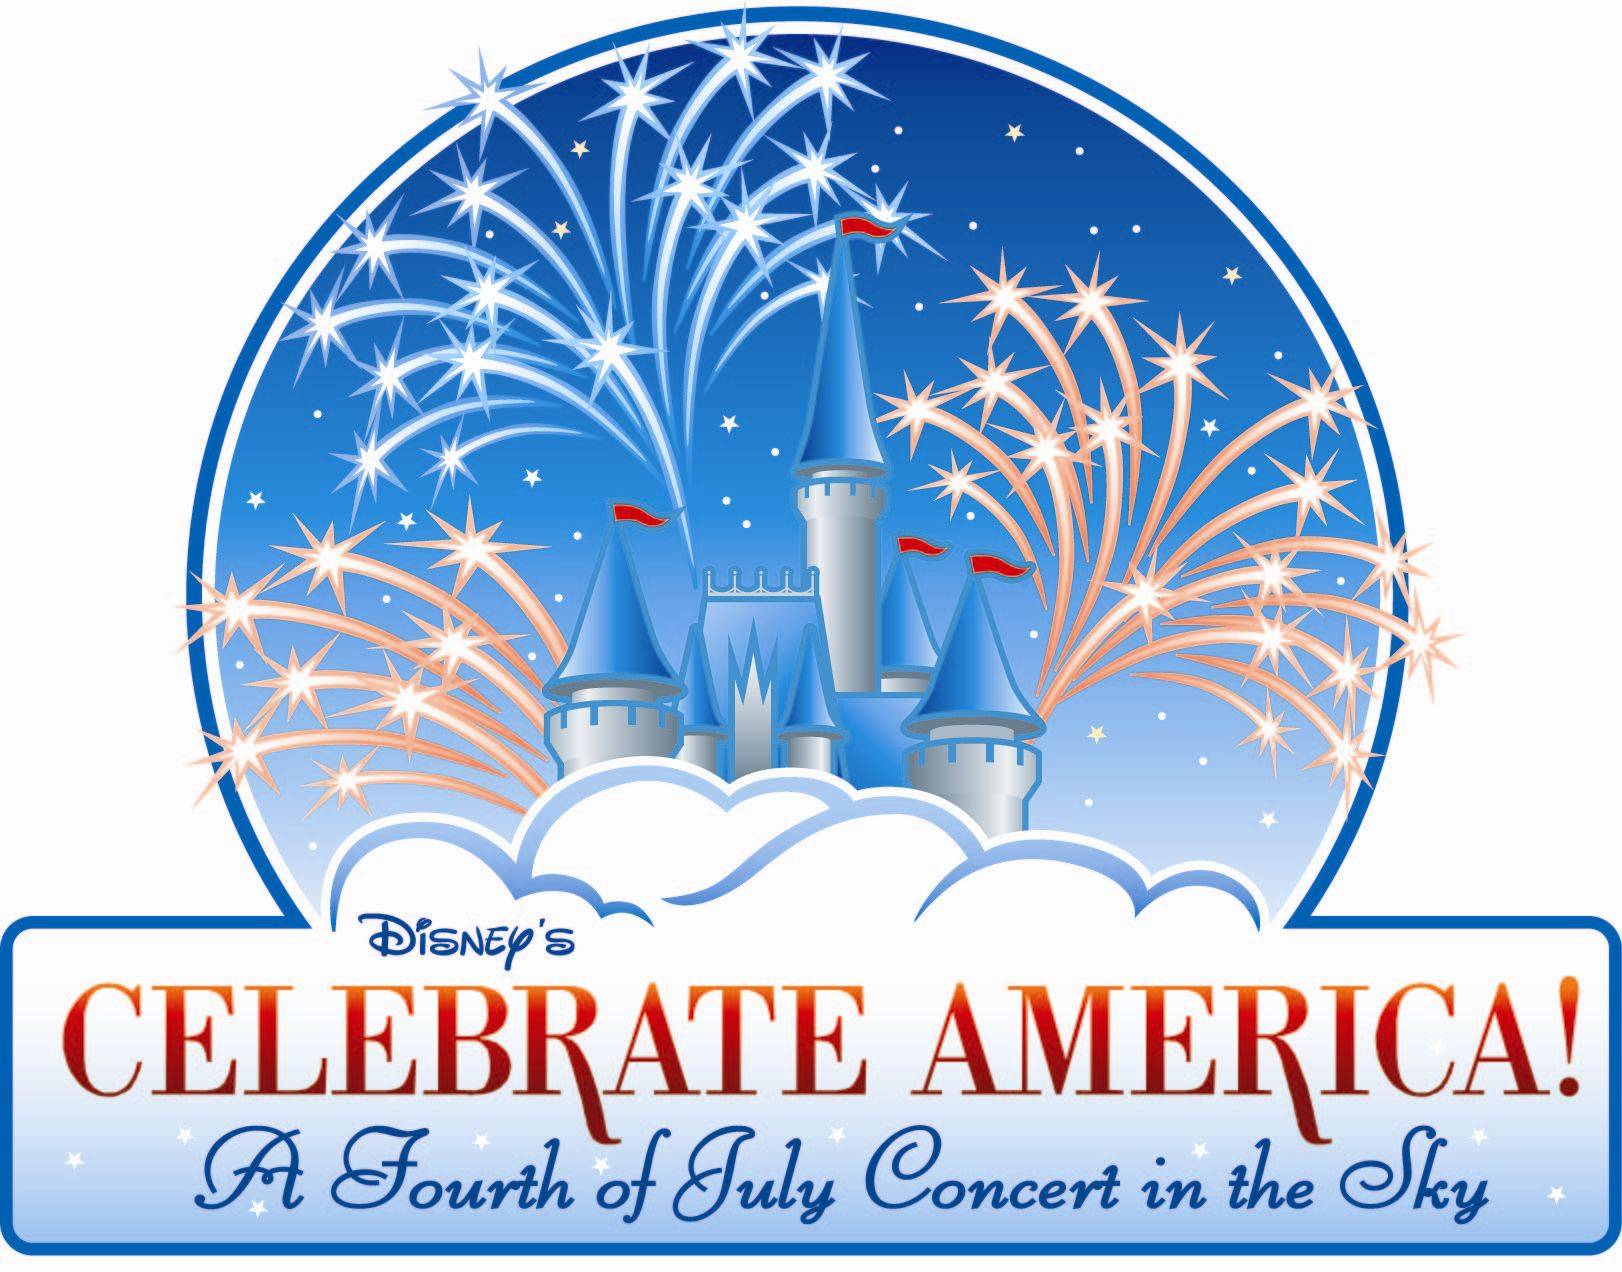 Disney's Celebrate America logo